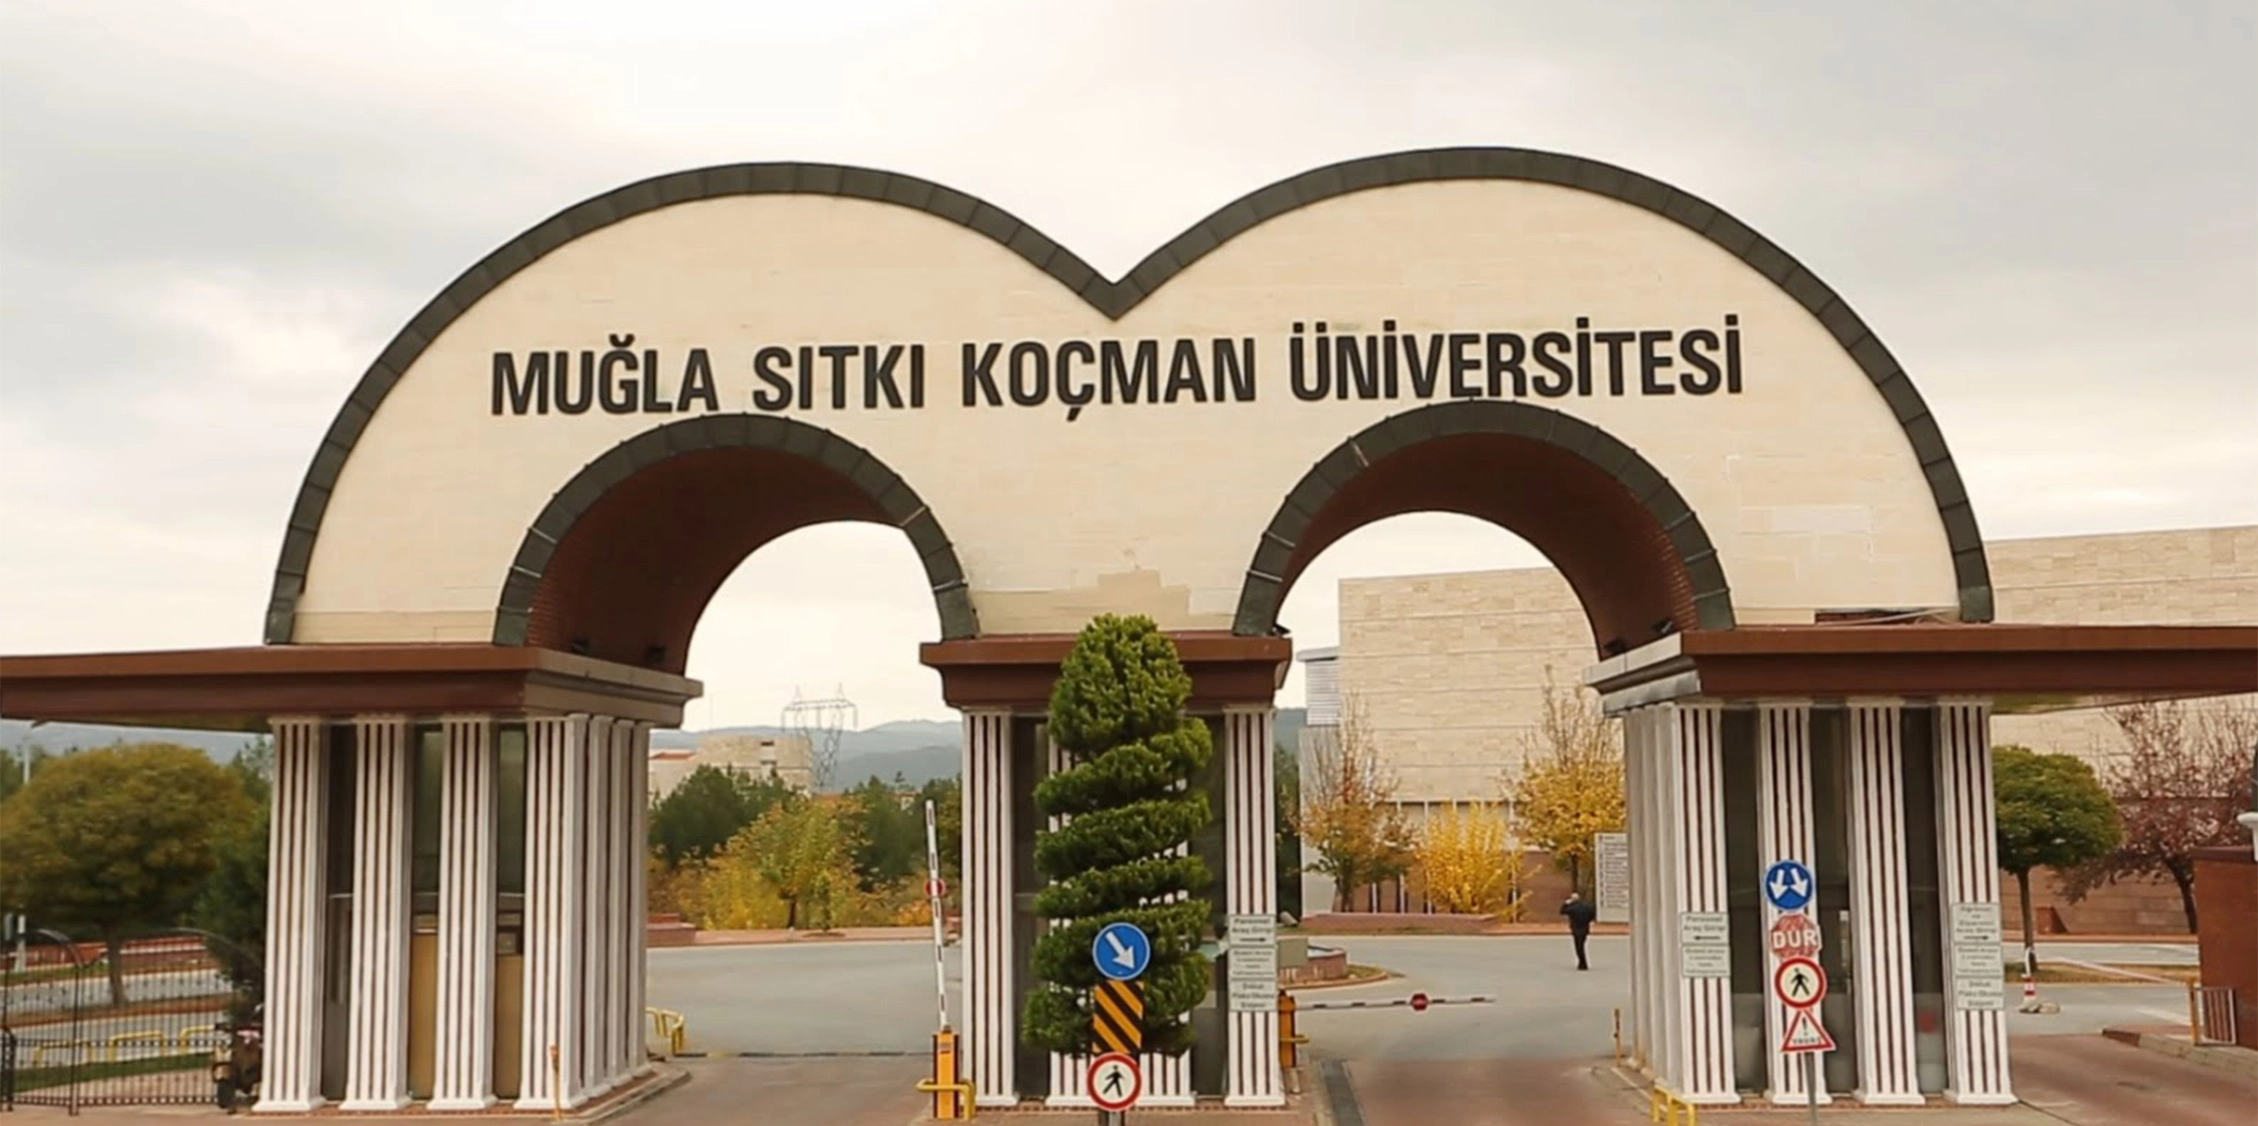 دانشگاه موغلا